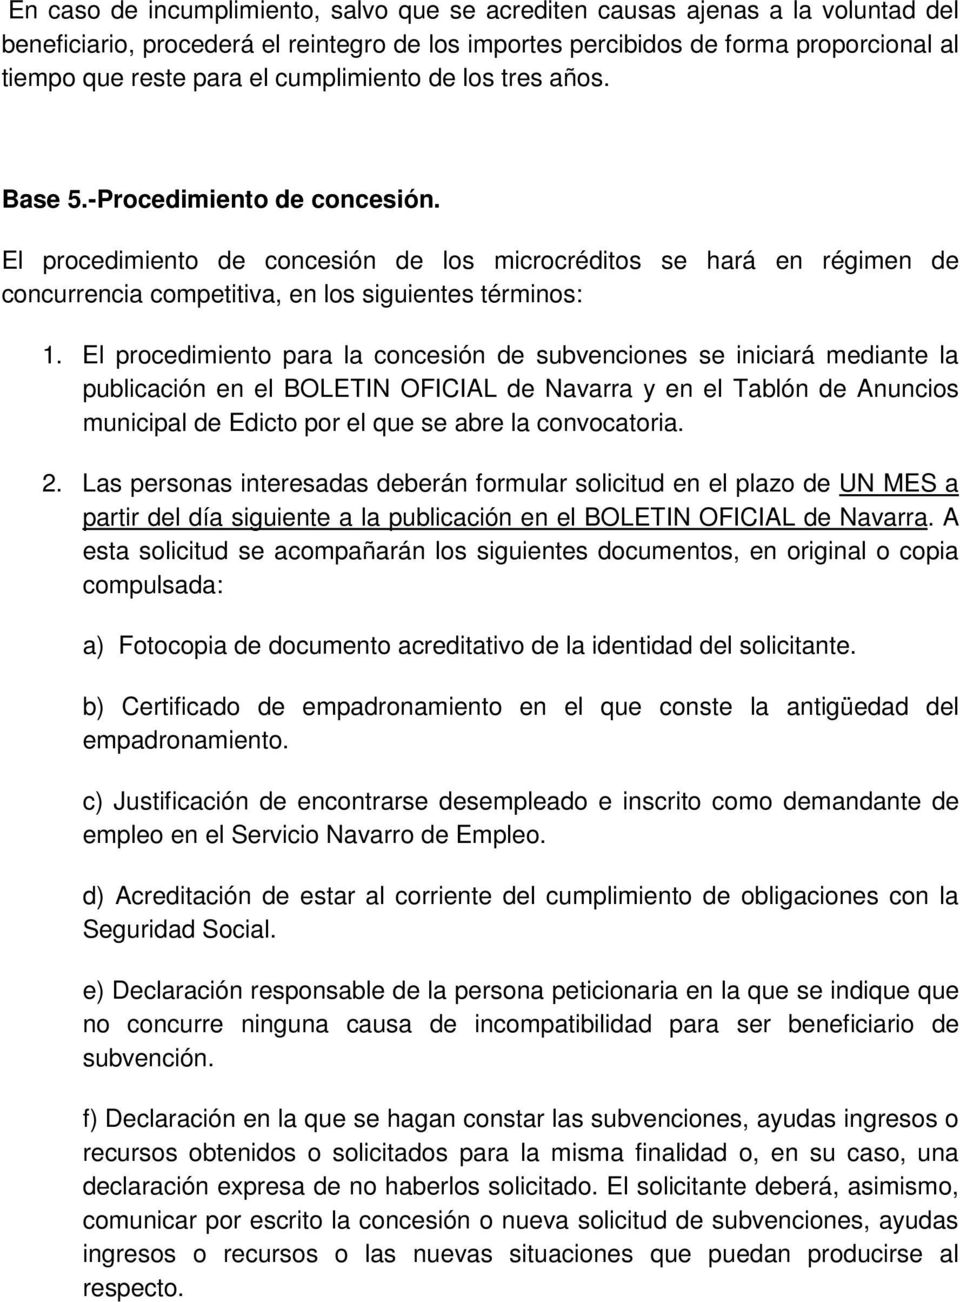 El procedimiento para la concesión de subvenciones se iniciará mediante la publicación en el BOLETIN OFICIAL de Navarra y en el Tablón de Anuncios municipal de Edicto por el que se abre la